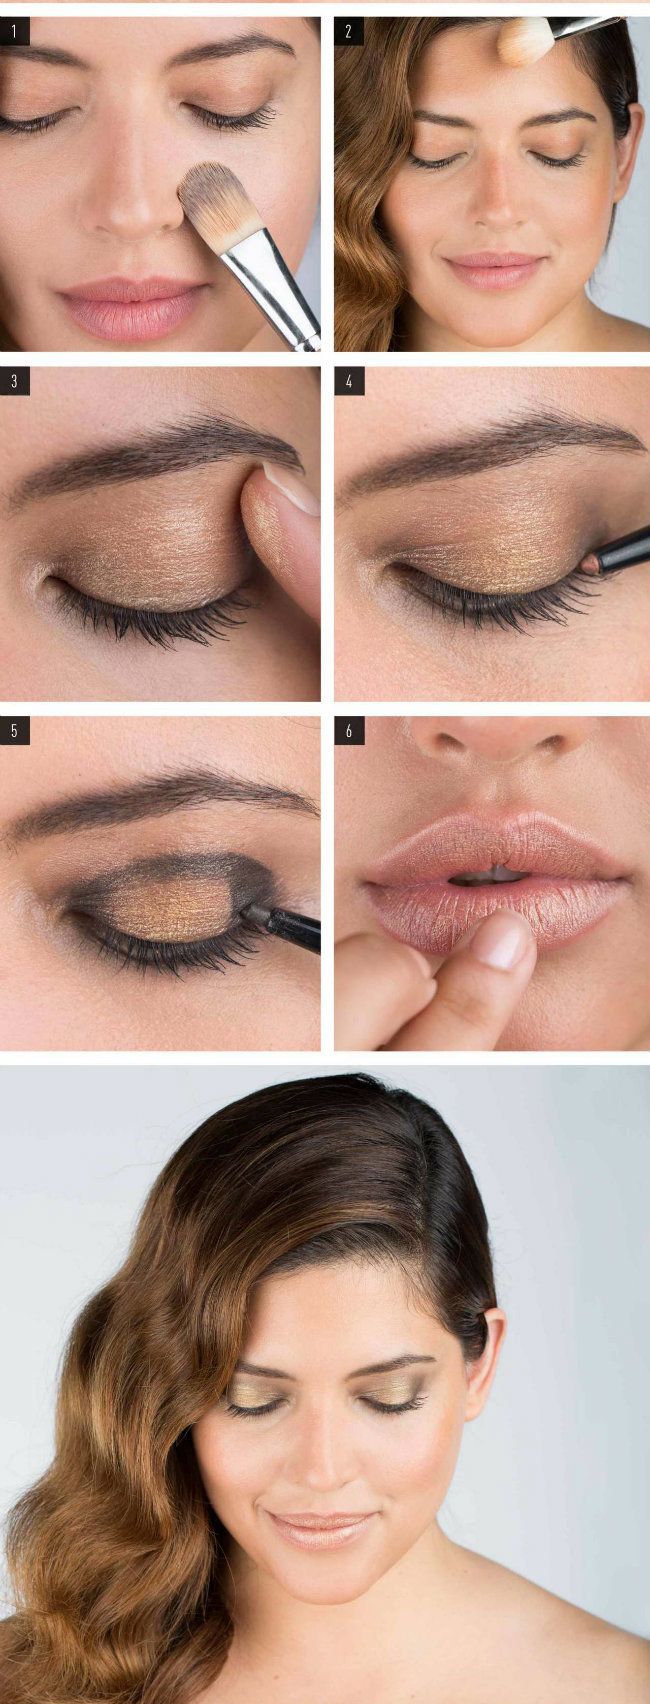 Makeup How To